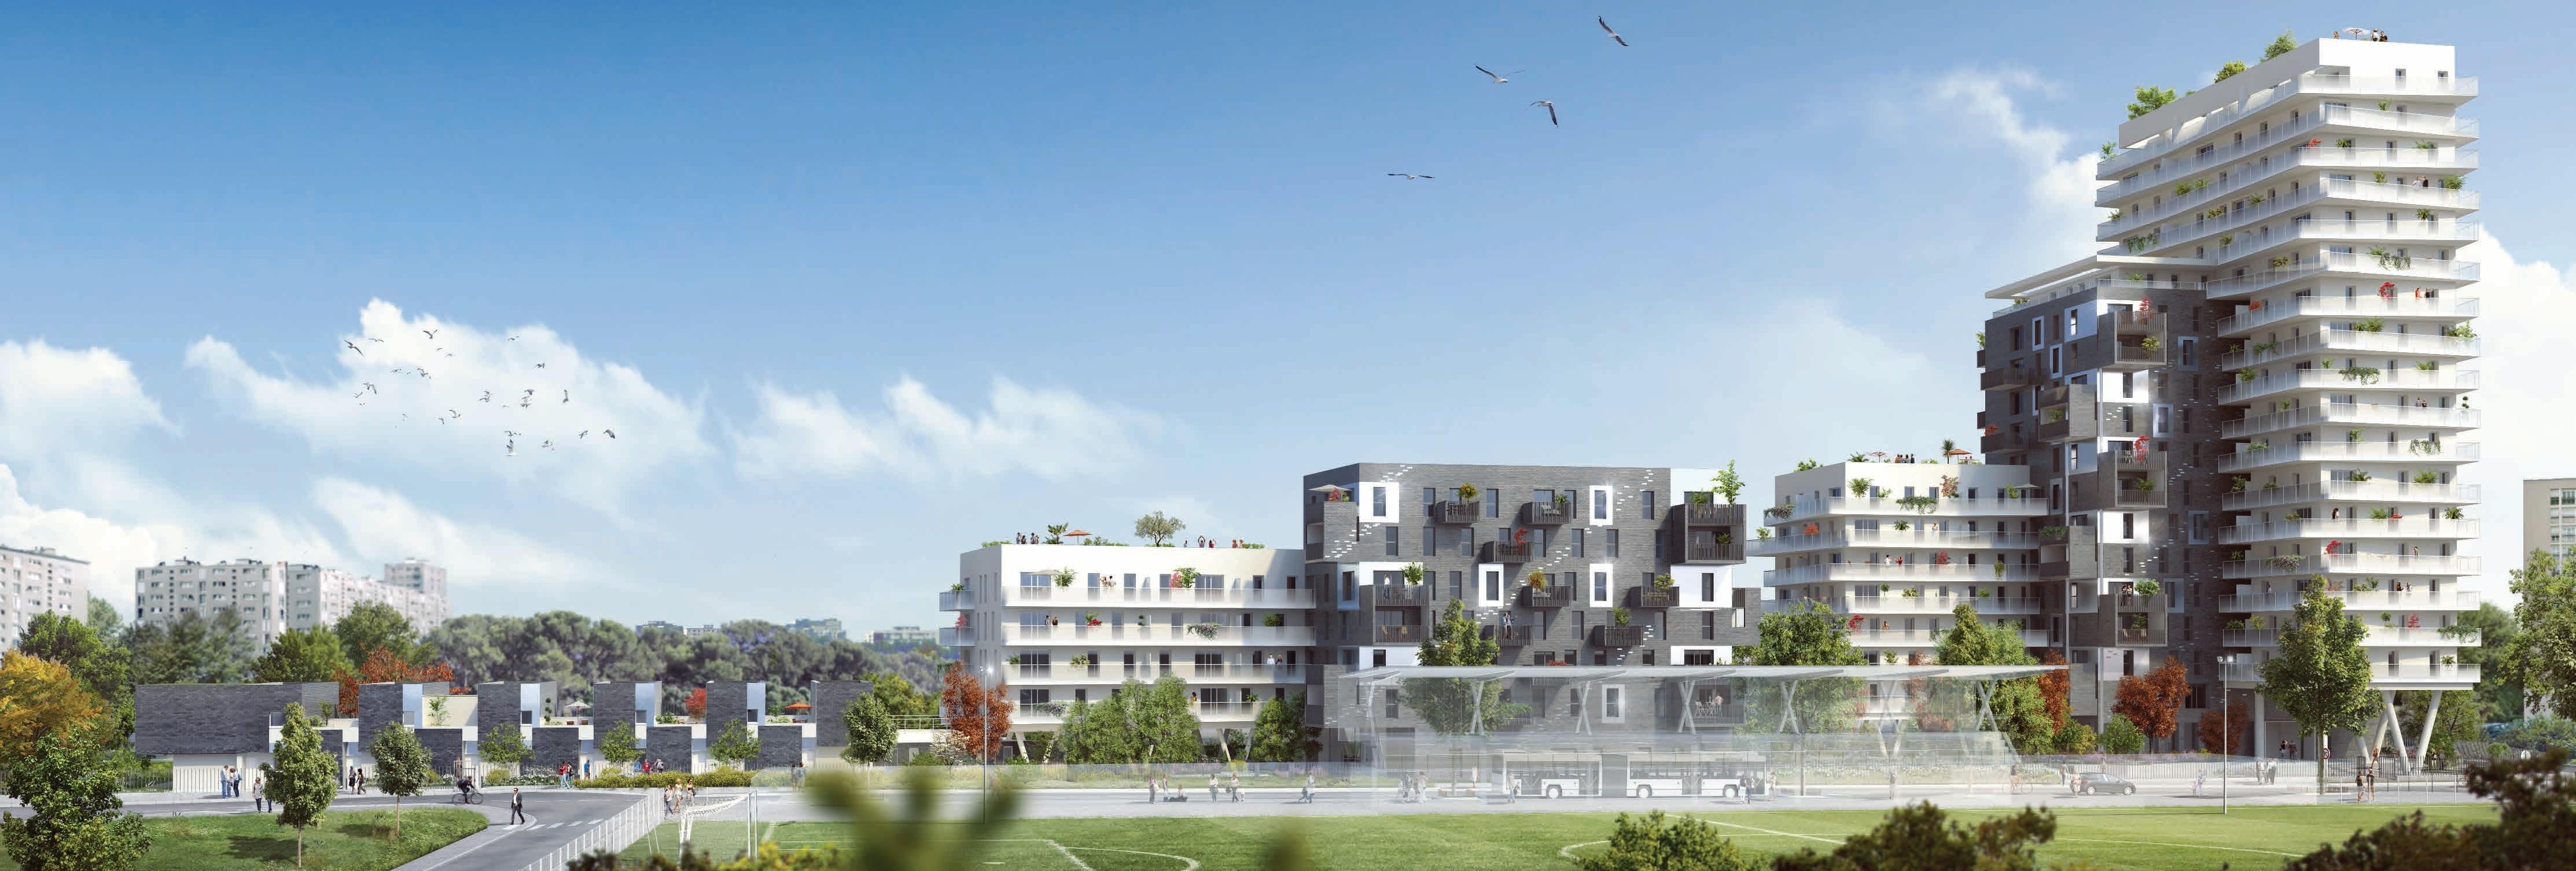 Résidence à Asnières-sur-Seine Quartier en plein renouveau , Programme qui va prendre de la valeur, Proximité toutes commodités ,